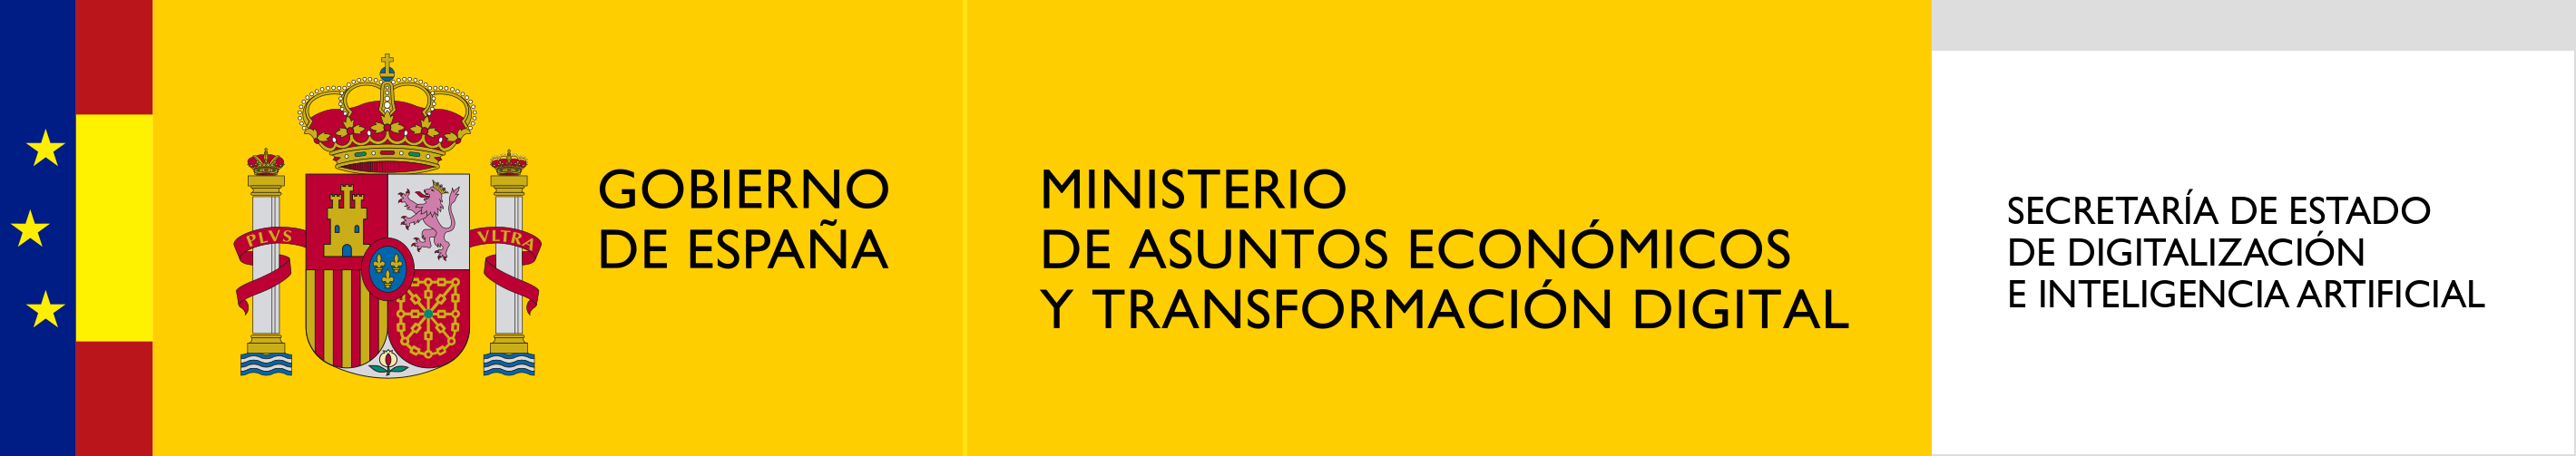 Logotipo de la Secretaría de Estado de Digitalización e Inteligencia Artificial